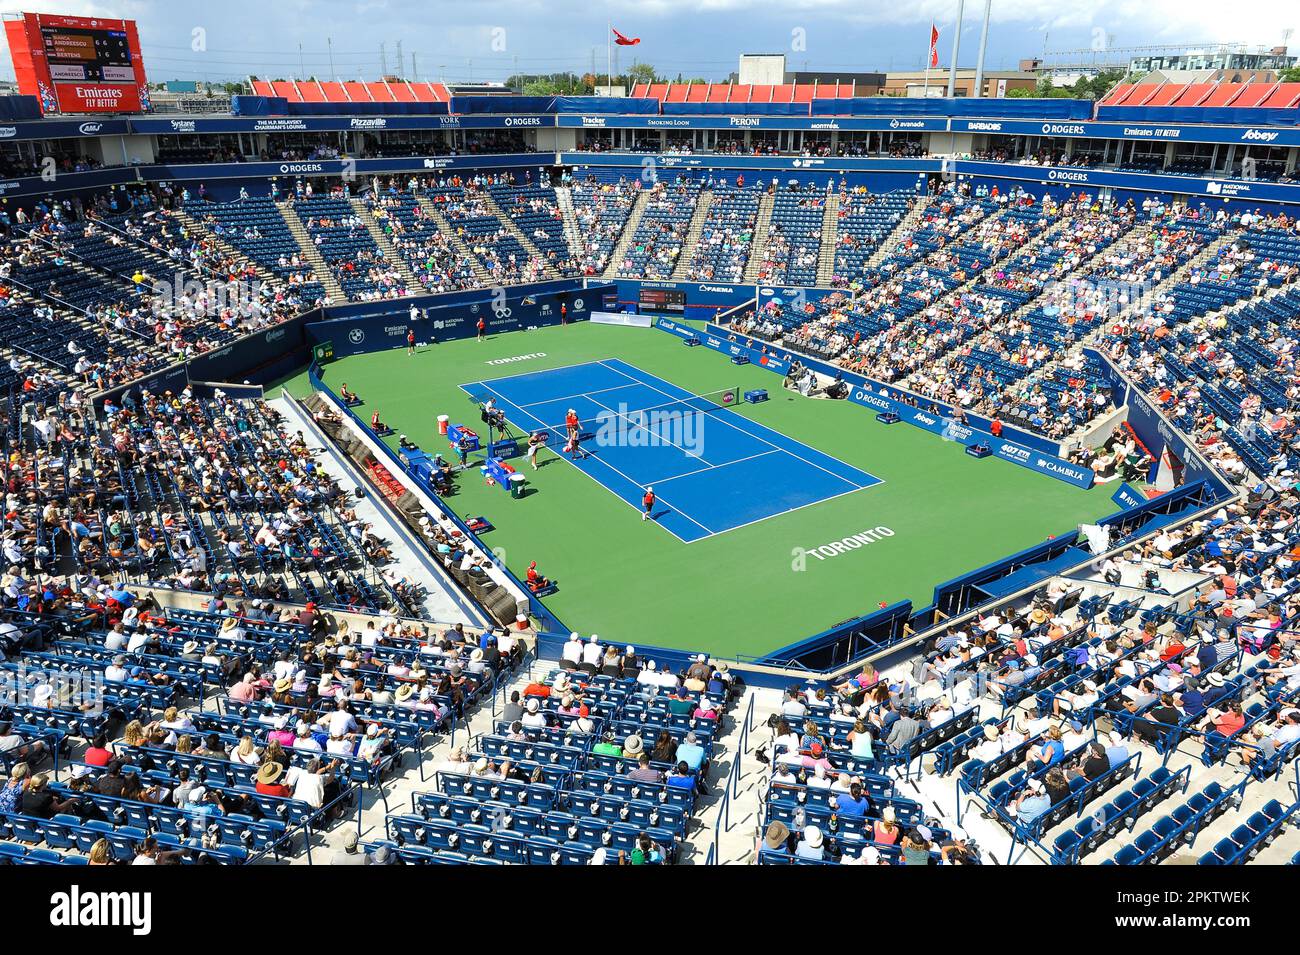 Toronto, ON, Canada - 8 août 2019 : vue au stade Sobeys, anciennement Aviva  Centre et Rexall Centre, pendant le tournoi de tennis de la coupe Rogers.  Le 12 Photo Stock - Alamy